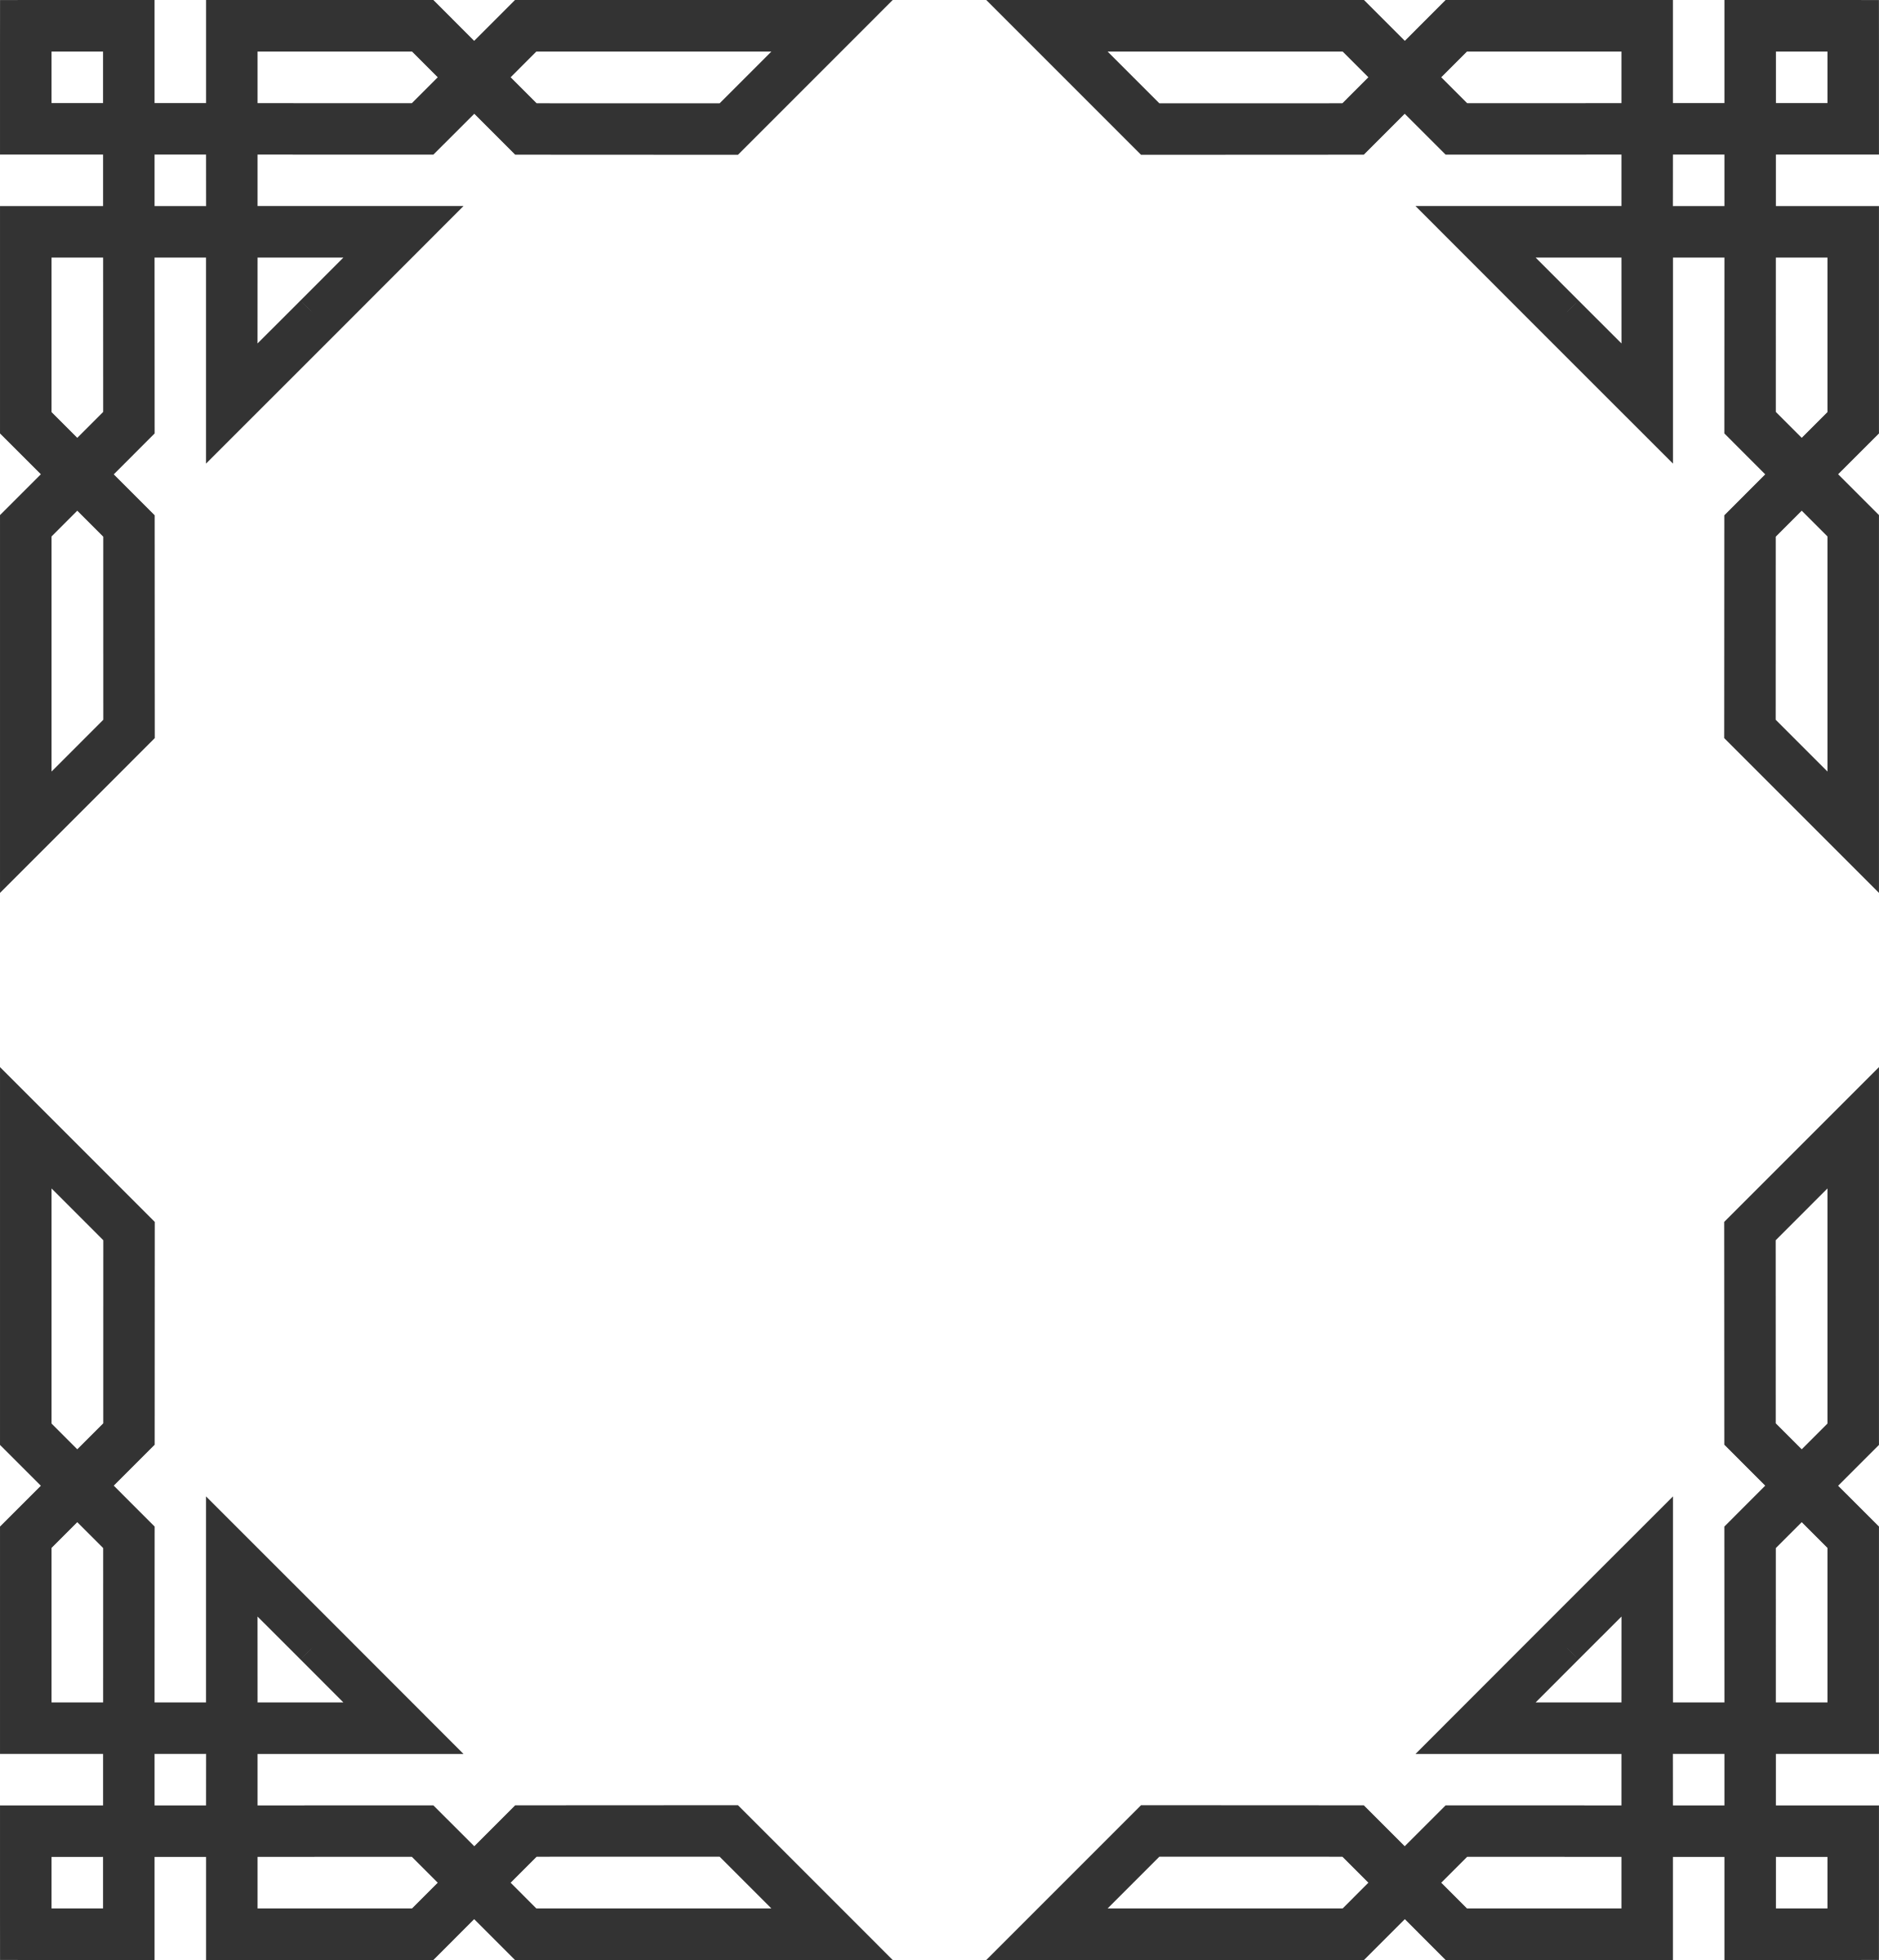 Islamic Frames Clipart 2 By Joanna - Islam Ornament Vector (2301x2400)